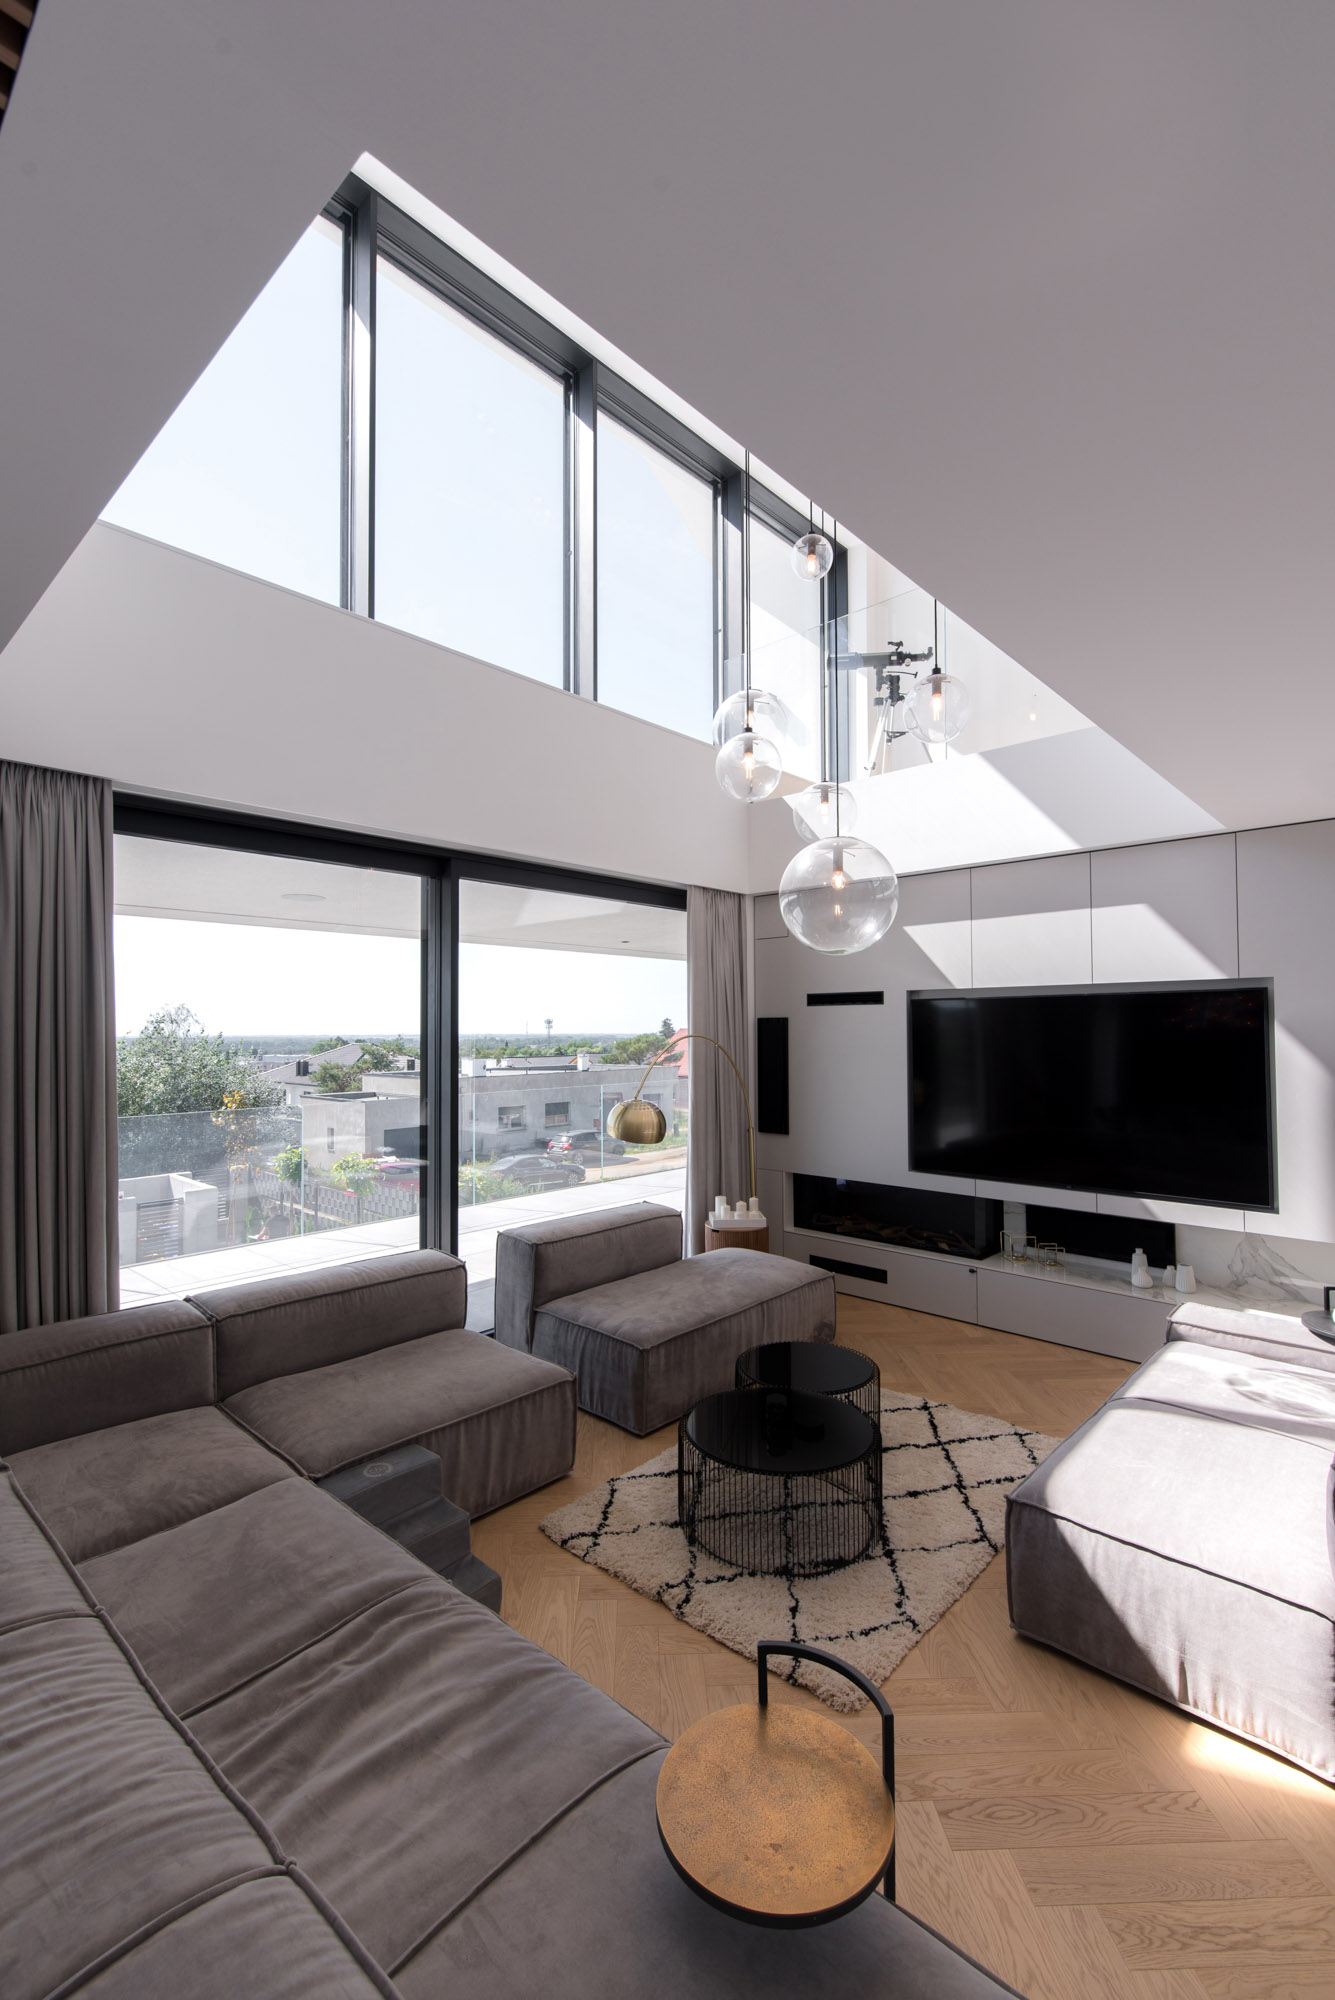 Гостиная, обставленная большим модульным диваном, создает много места для отдыха. Пустота в потолке двойной высоты позволяет проникать естественному свету из верхних окон.